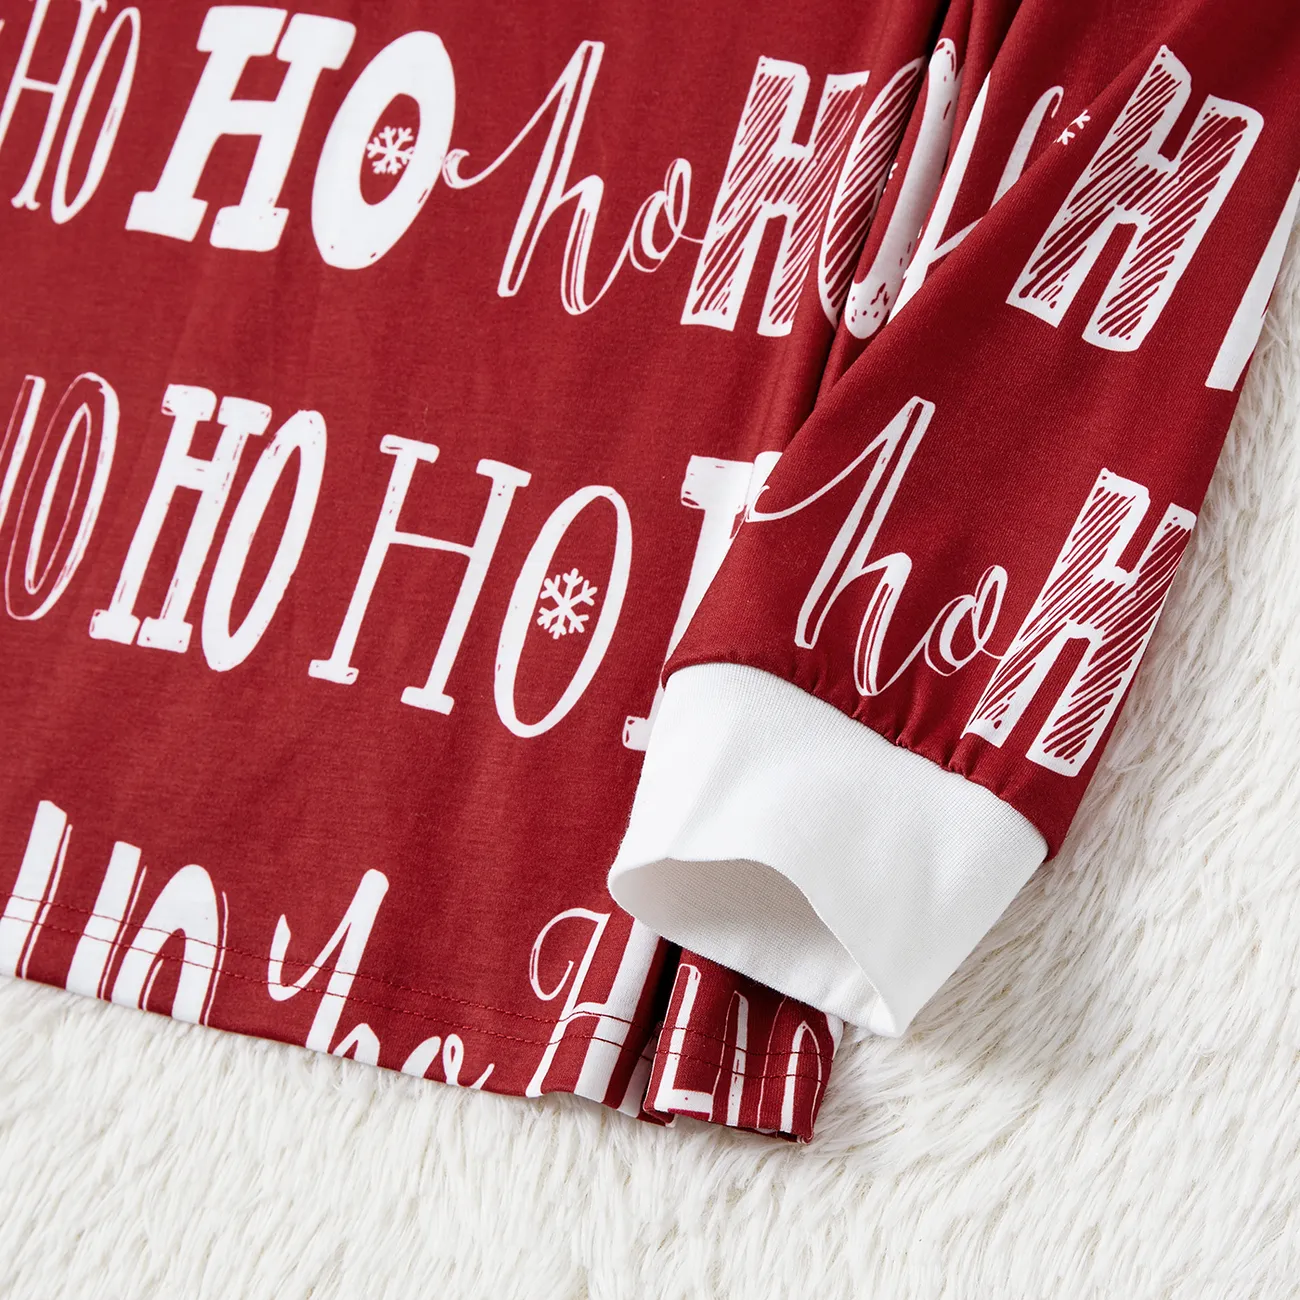 Natal Look de família Manga comprida Conjuntos de roupa para a família Pijamas (Flame Resistant) Borgonha big image 1